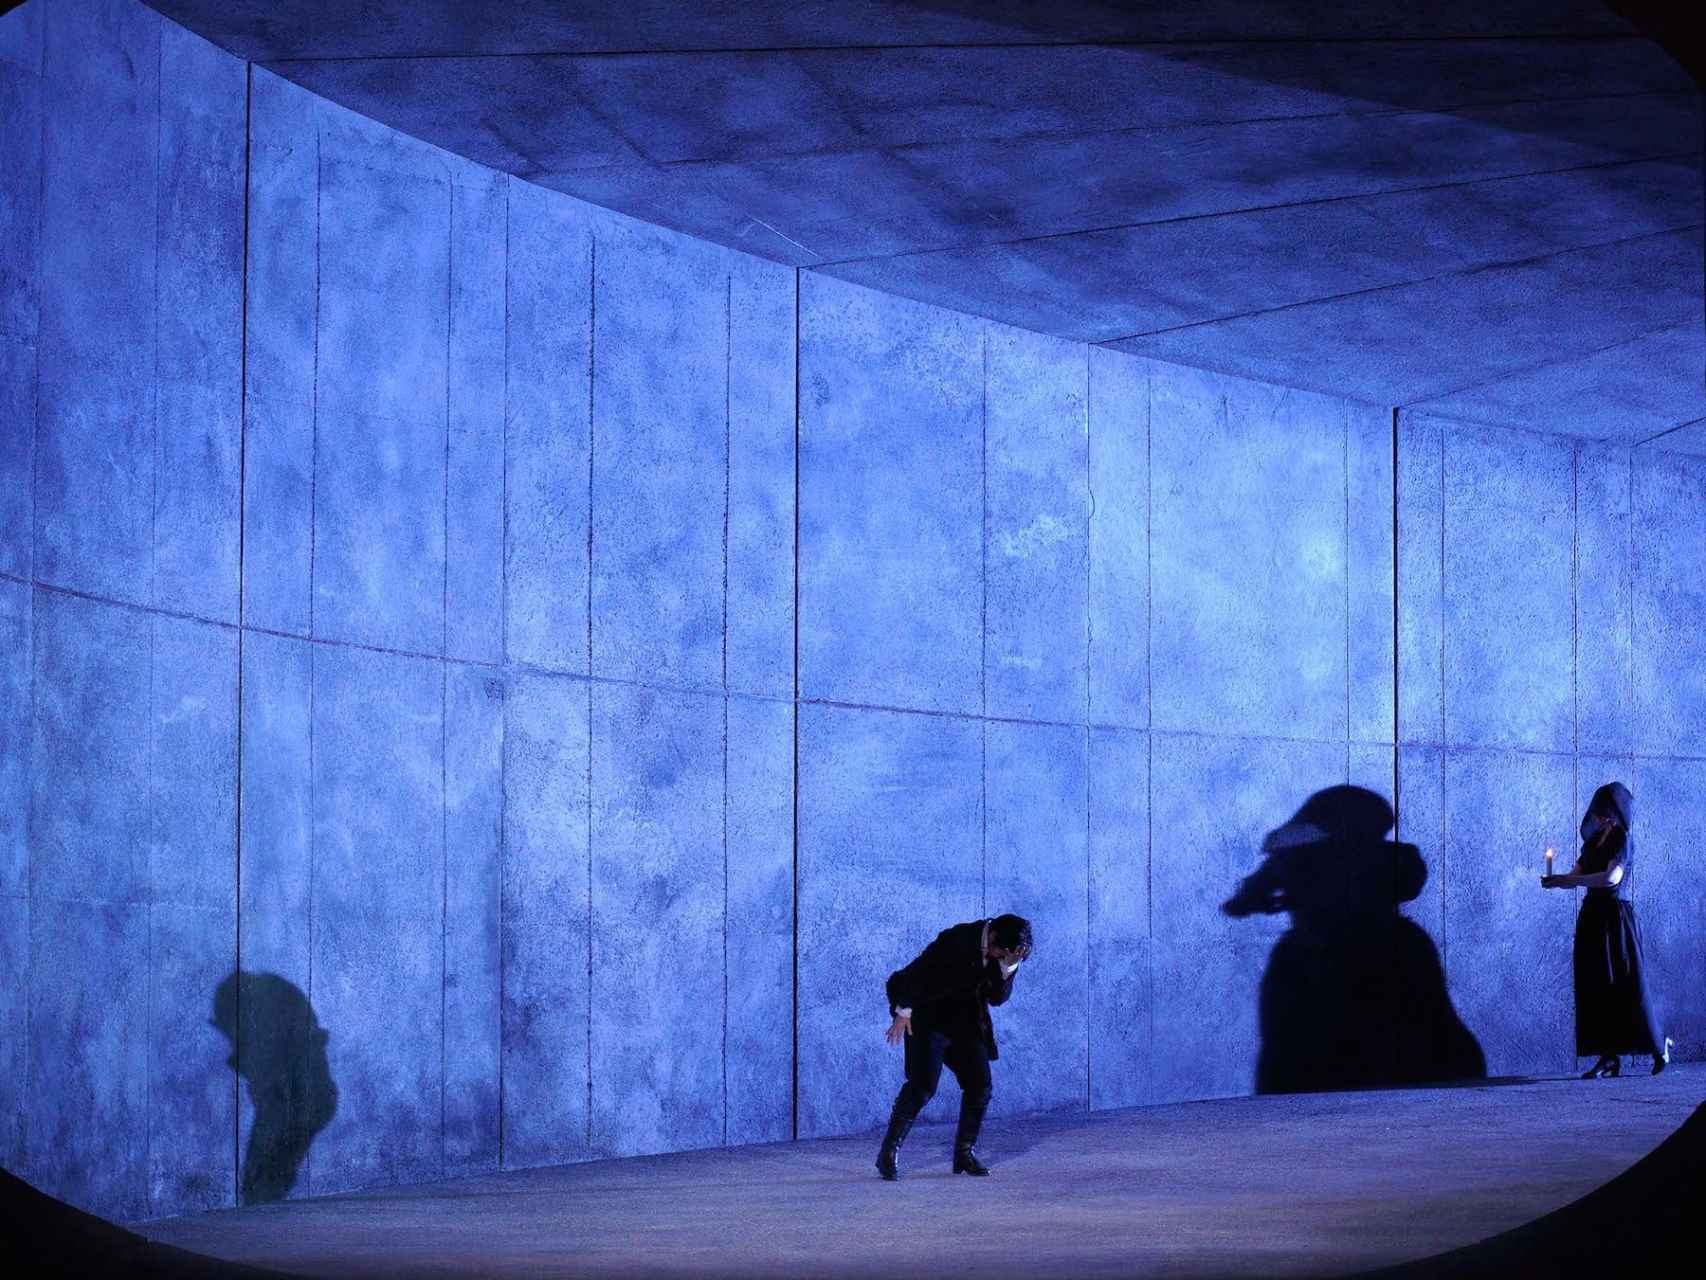 Imagen del túnel de hormigón que llena todo el escenario de Lucio Silla.